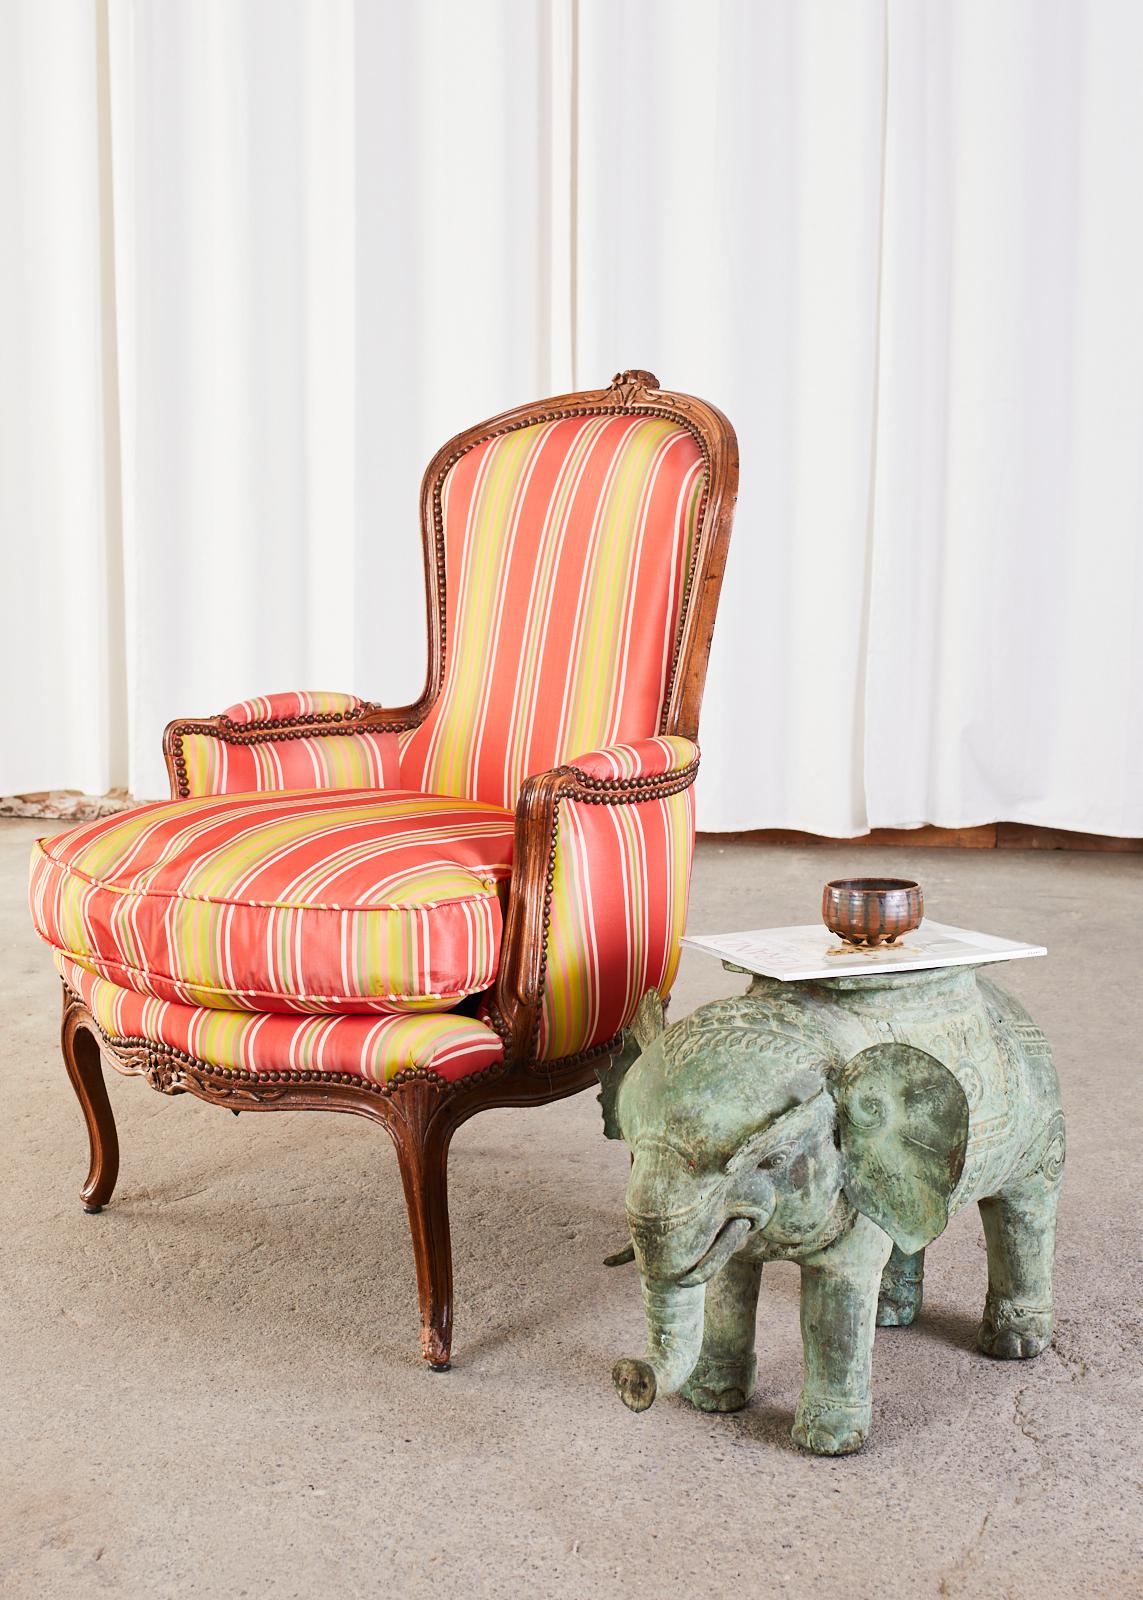 Paire de fauteuils bergère restaurés du 19ème siècle en noyer. Presque identiques, fabriquées dans un style pour elle et lui, l'une des chaises étant plus haute de 5 cm au niveau du dossier et présentant une crête florale plus grande sur le dessus.